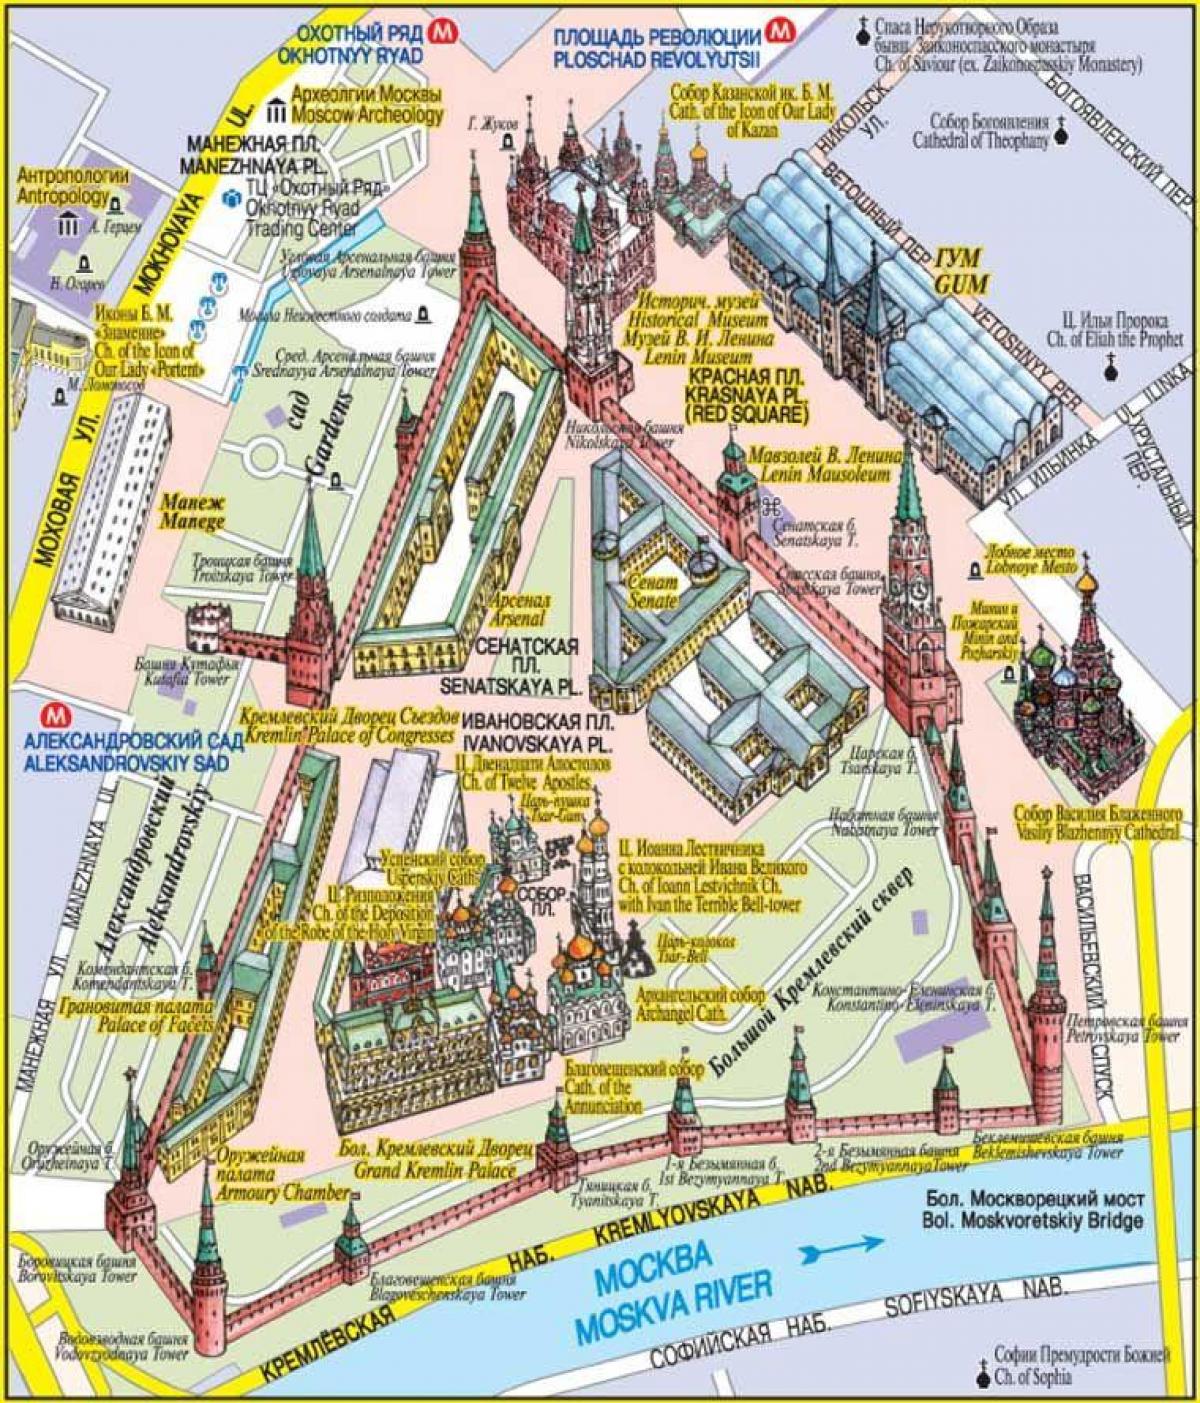 Moskau der Rote Platz-Landkarte - der Rote Platz, Moskau Karte (Russland)